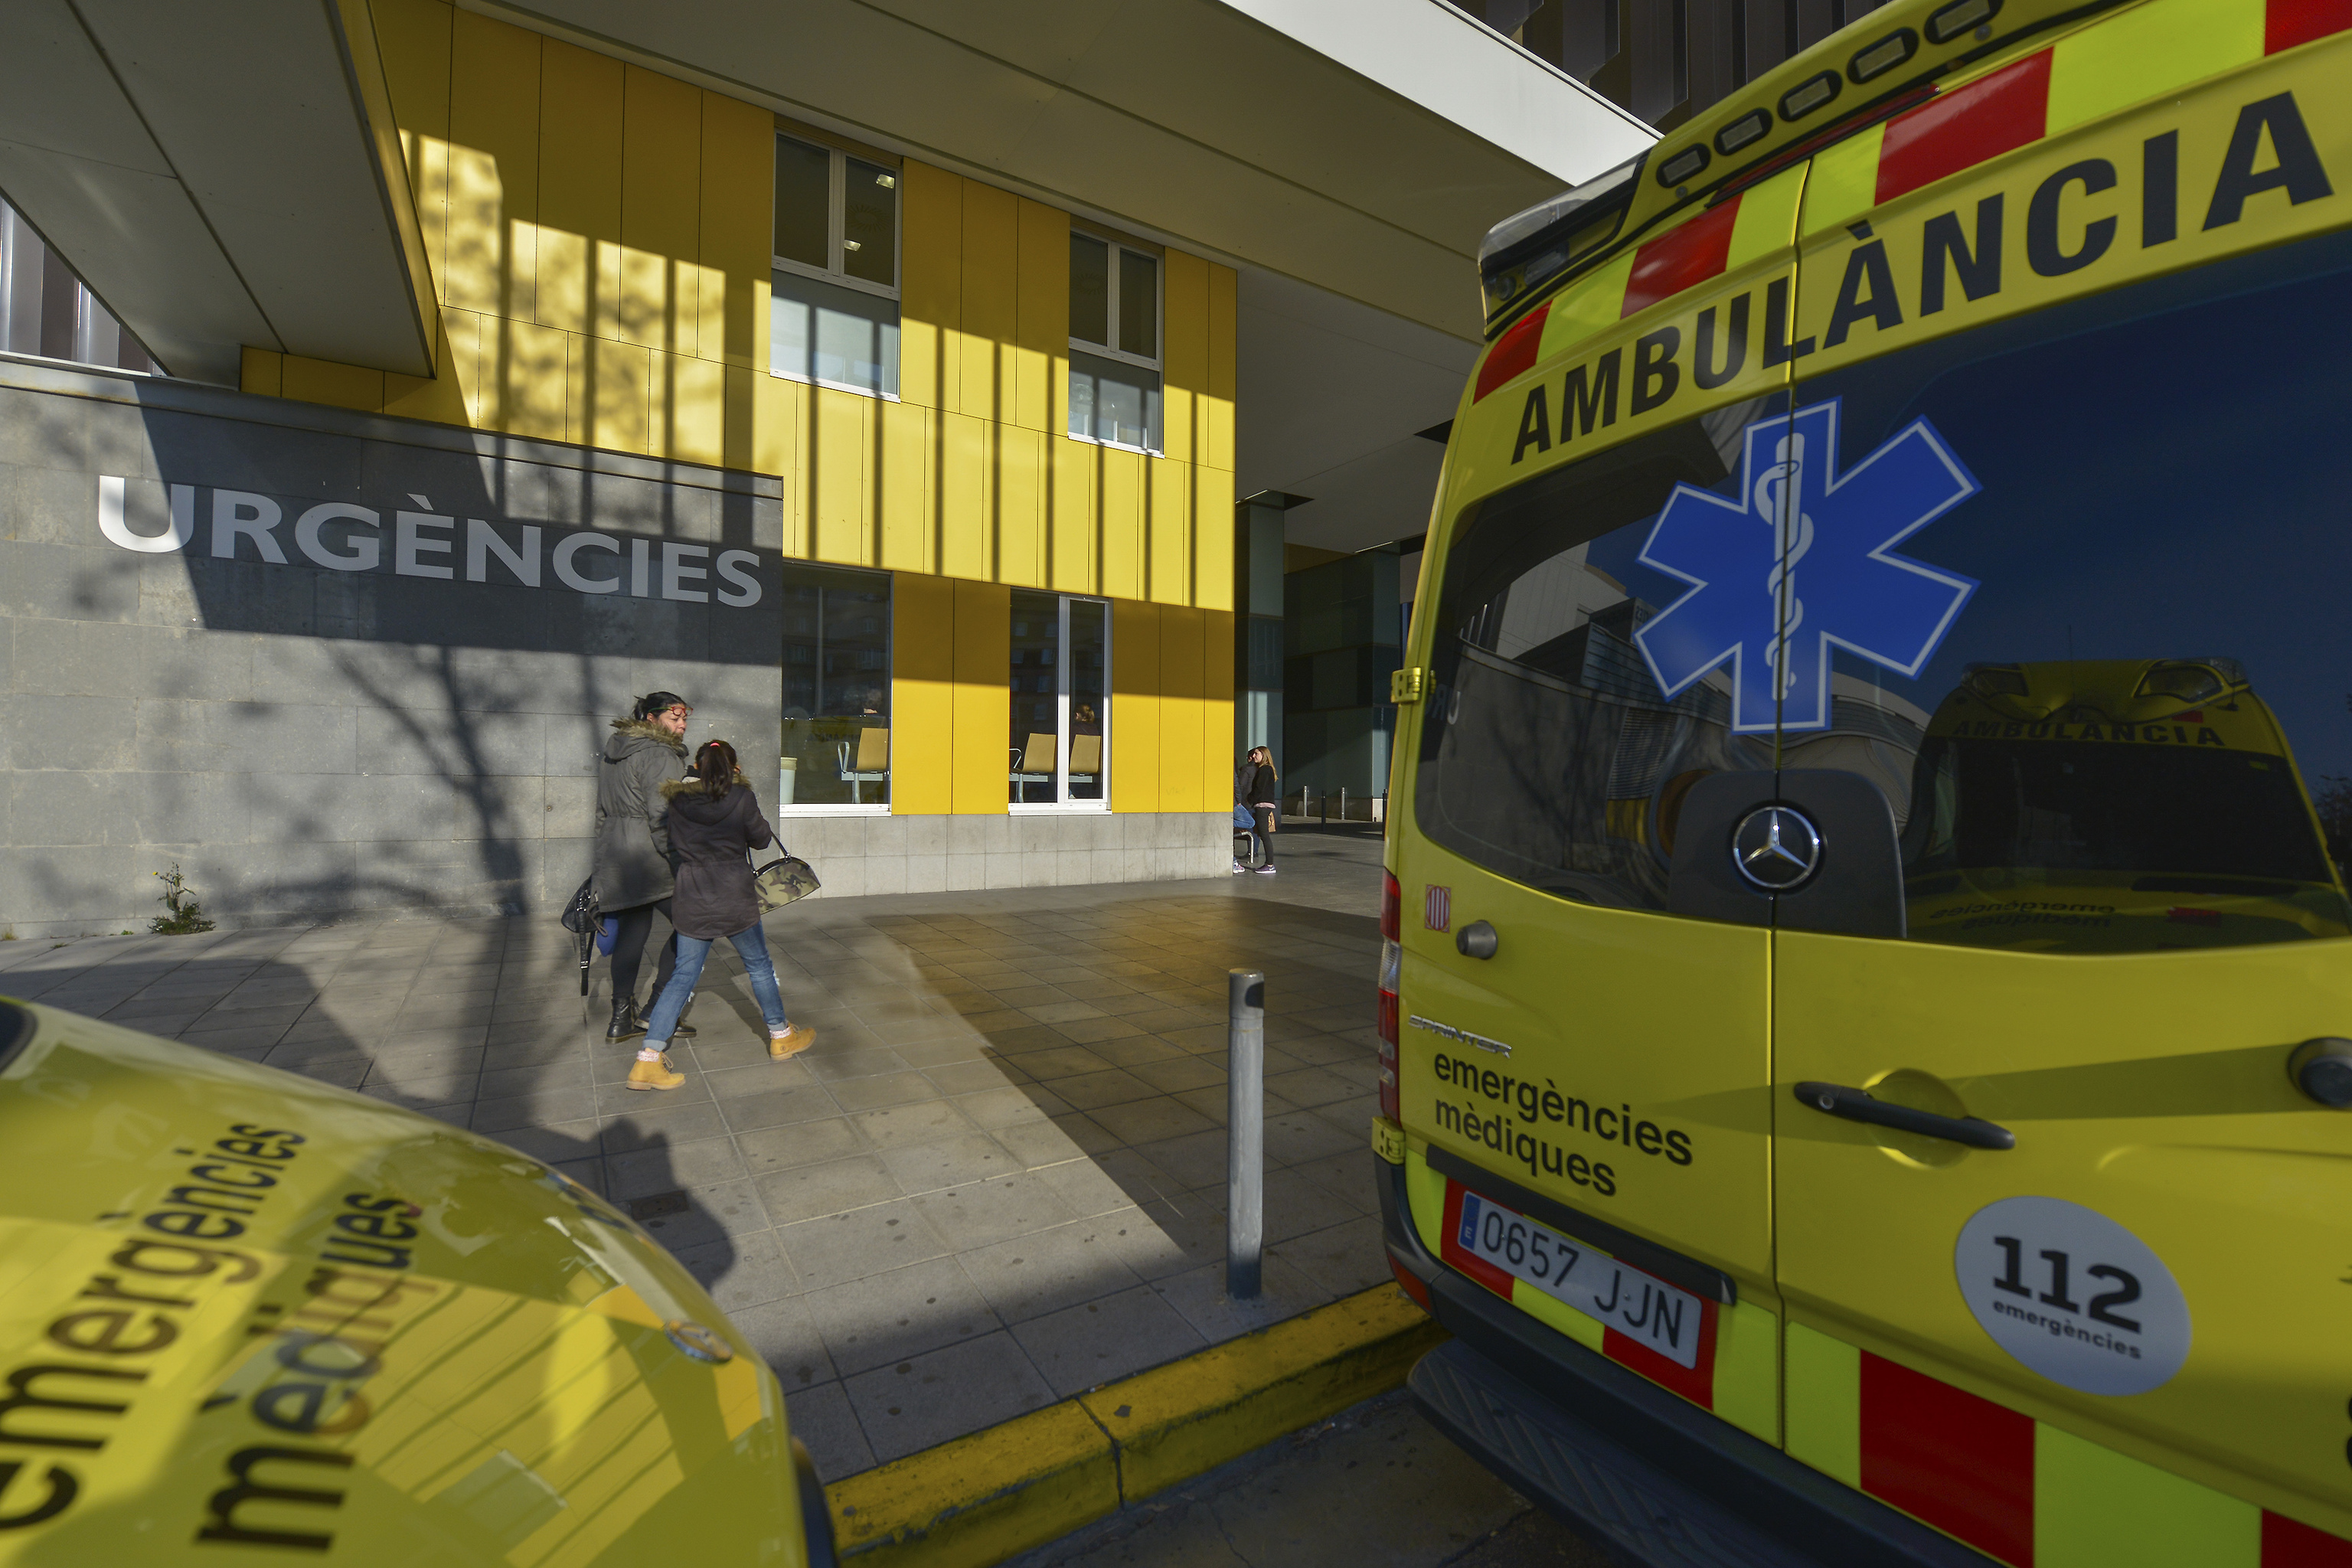 Una ambulancia a las puertas de un hospital barcelons.